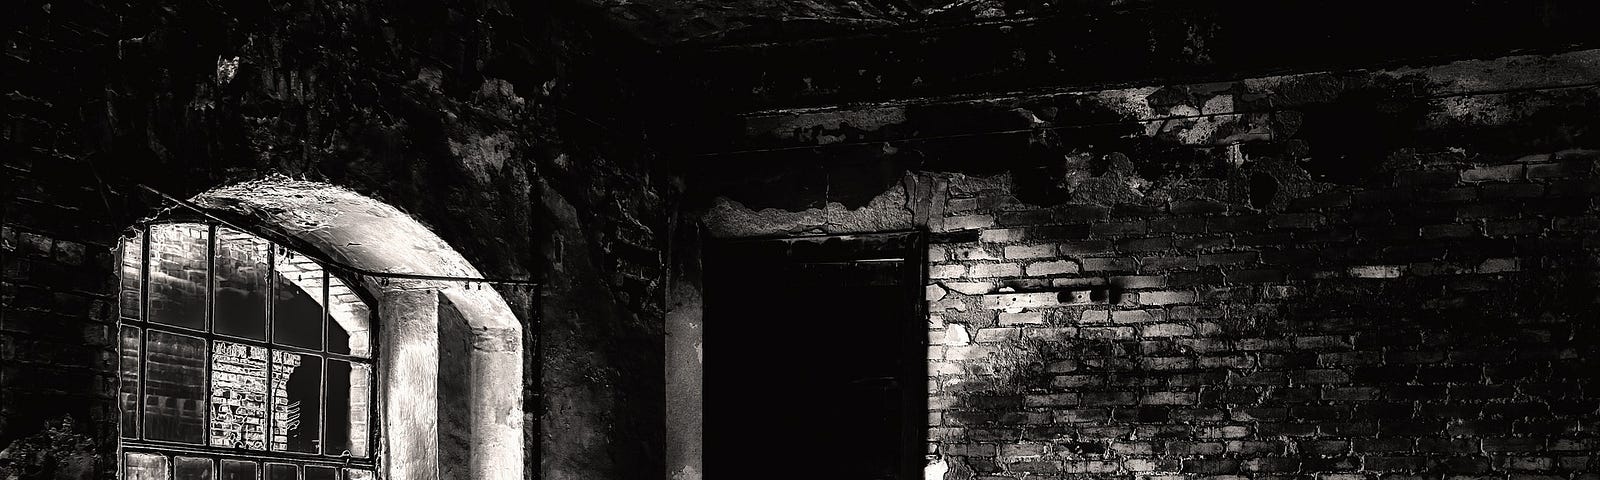 Dark basement with brick walls, dirt floor, and dirty broken window